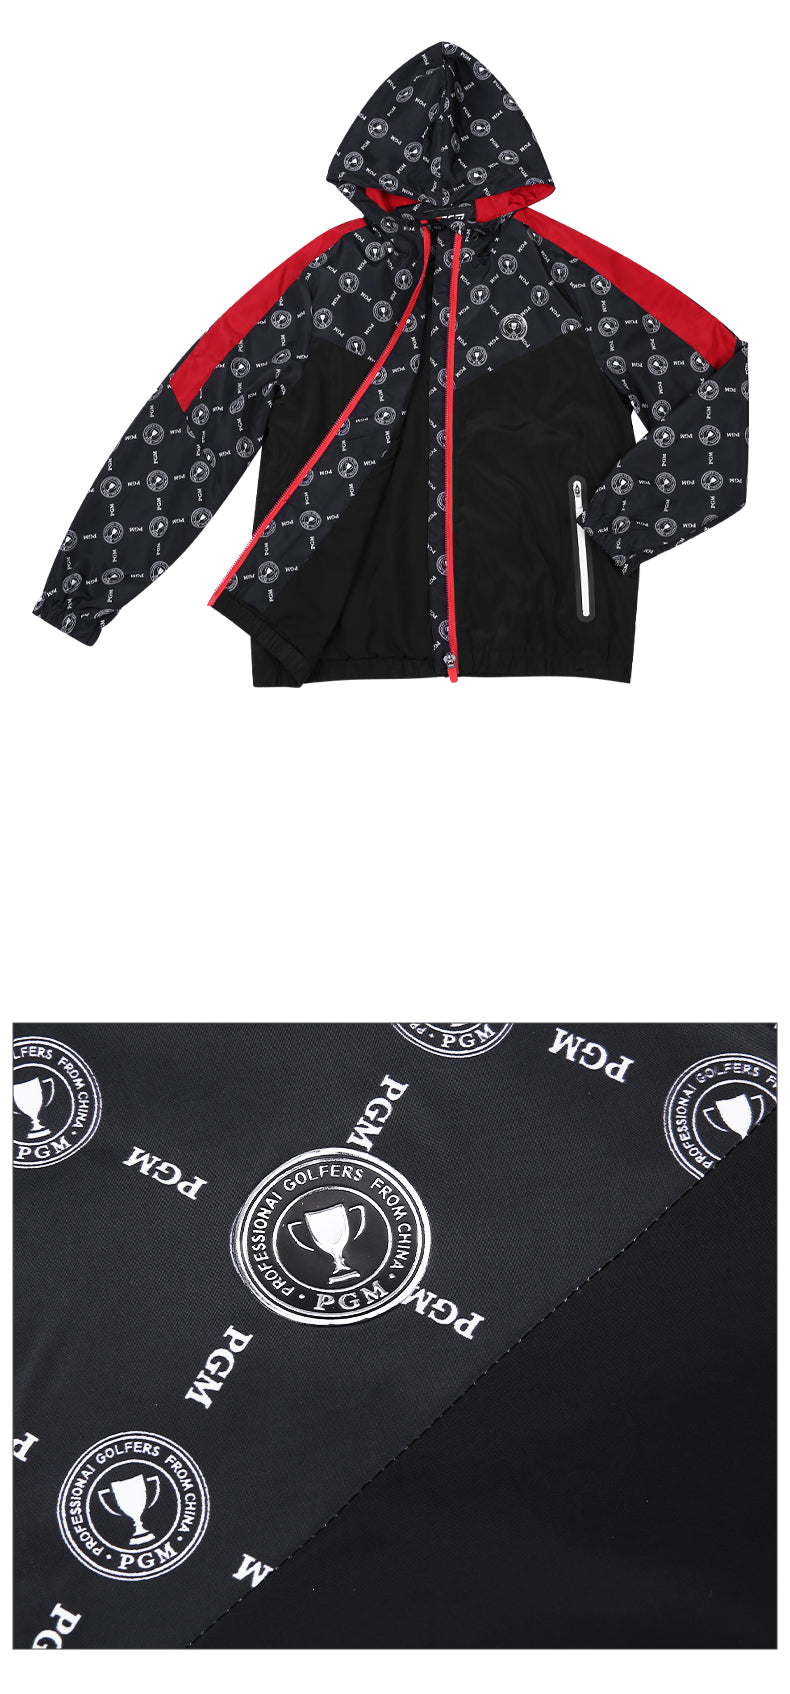 PGM YF431 kids golf jacket wind breaker full zip outdoor casual sports golf jacket